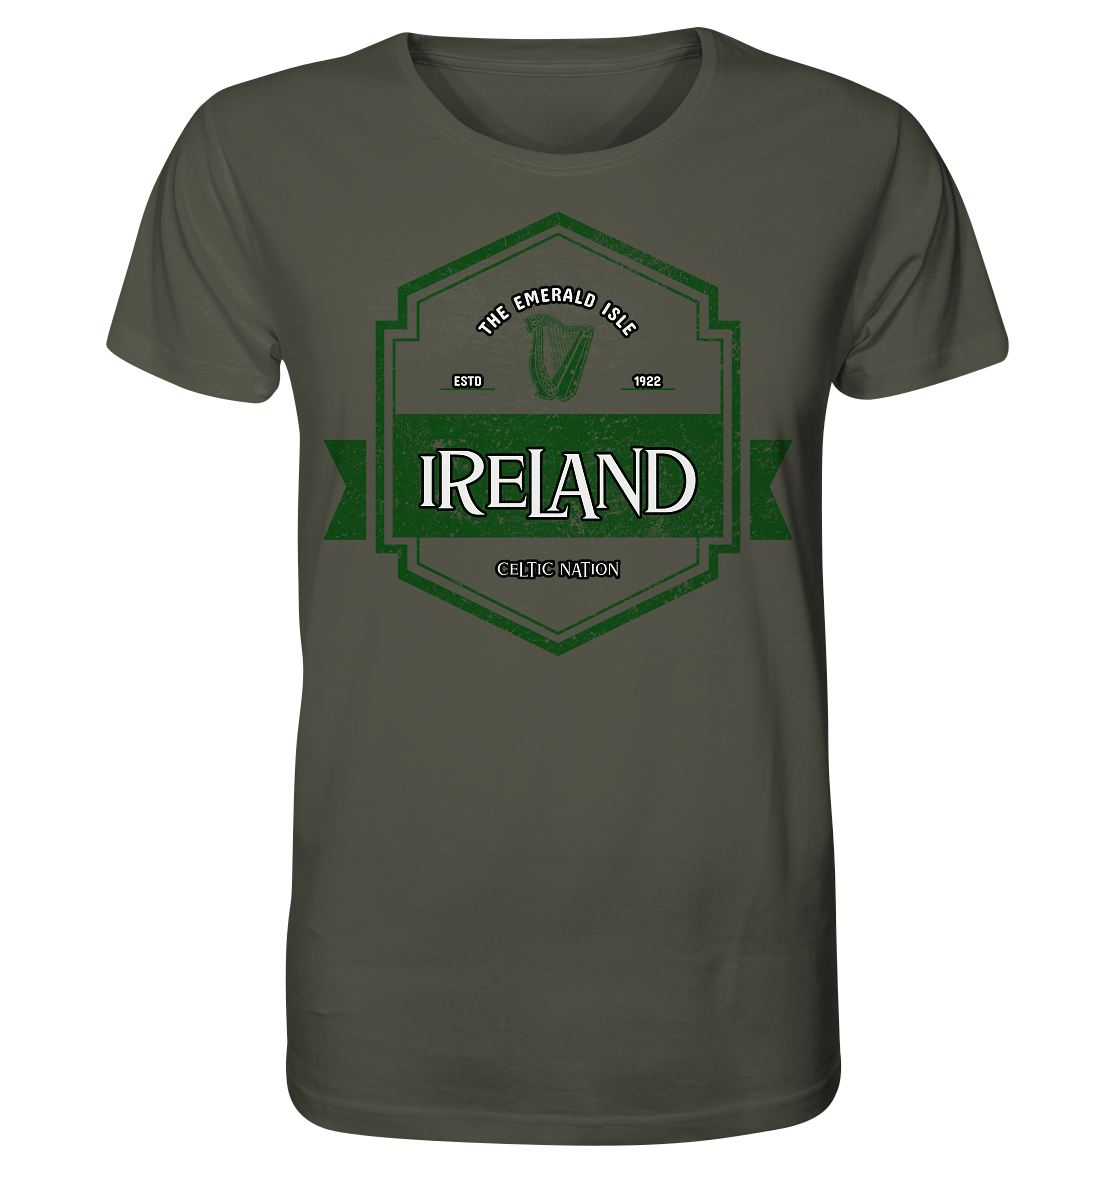 Ireland "The Emerald Isle / Celtic Nation" - Organic Shirt